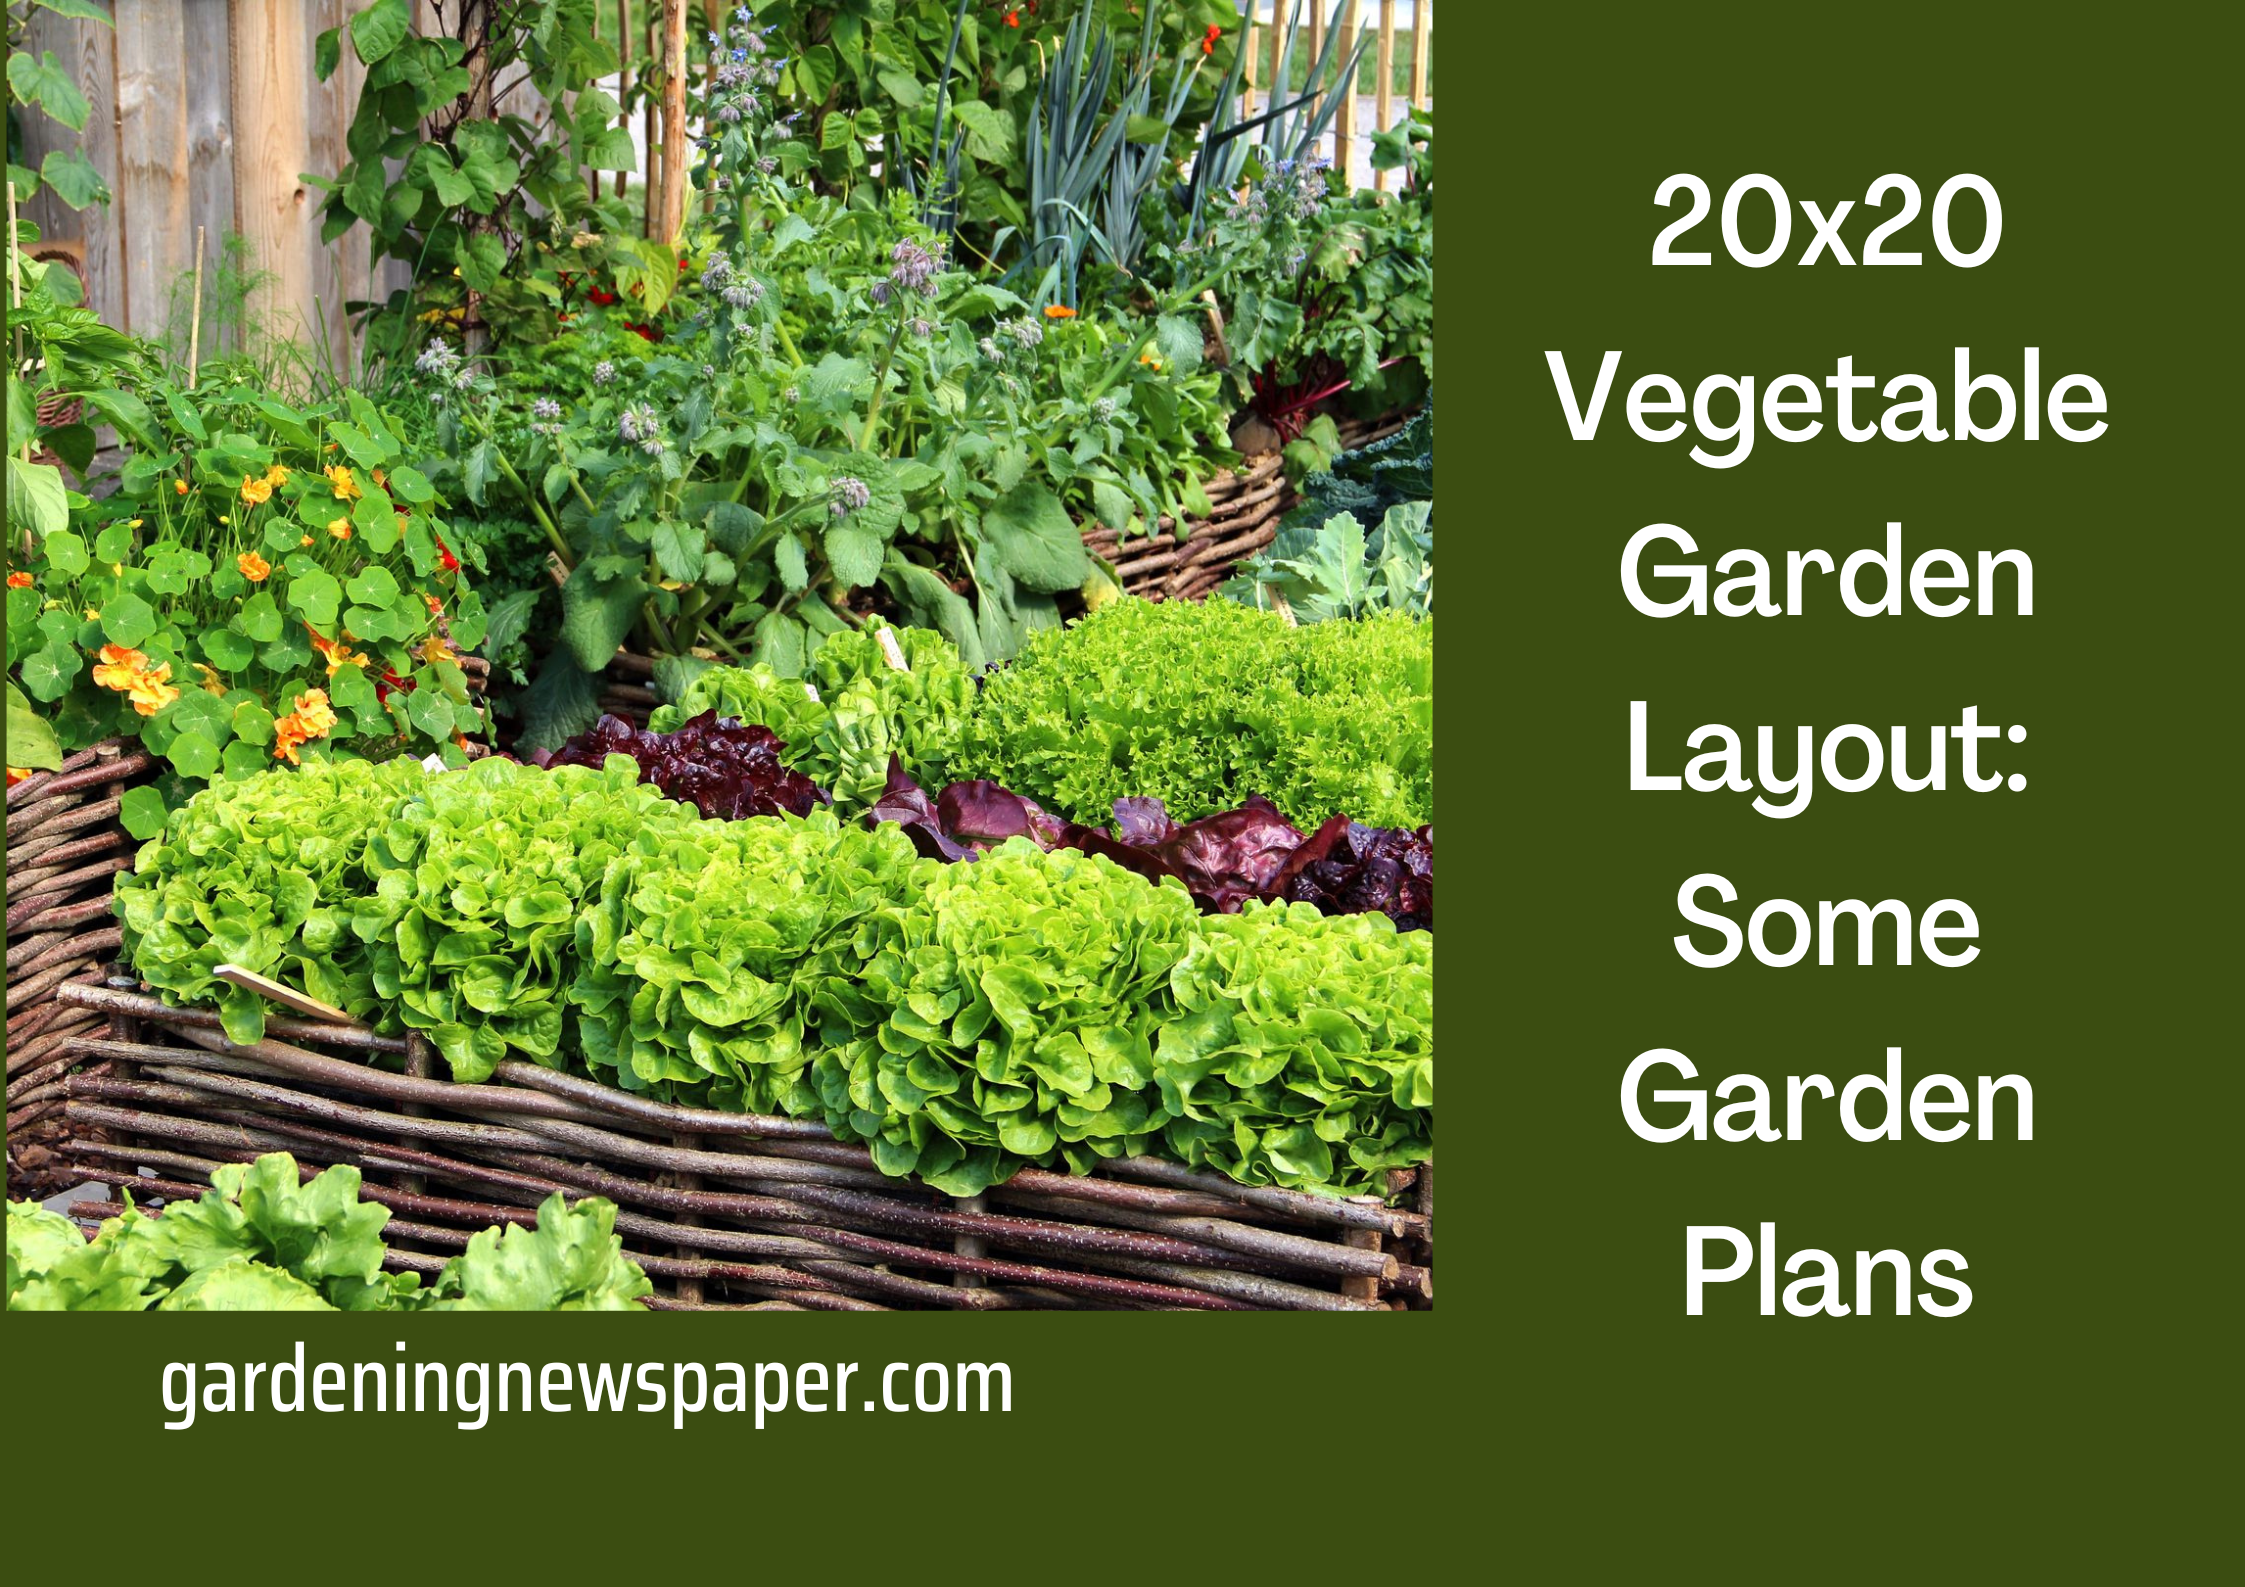 20x20 Vegetable Garden Layout